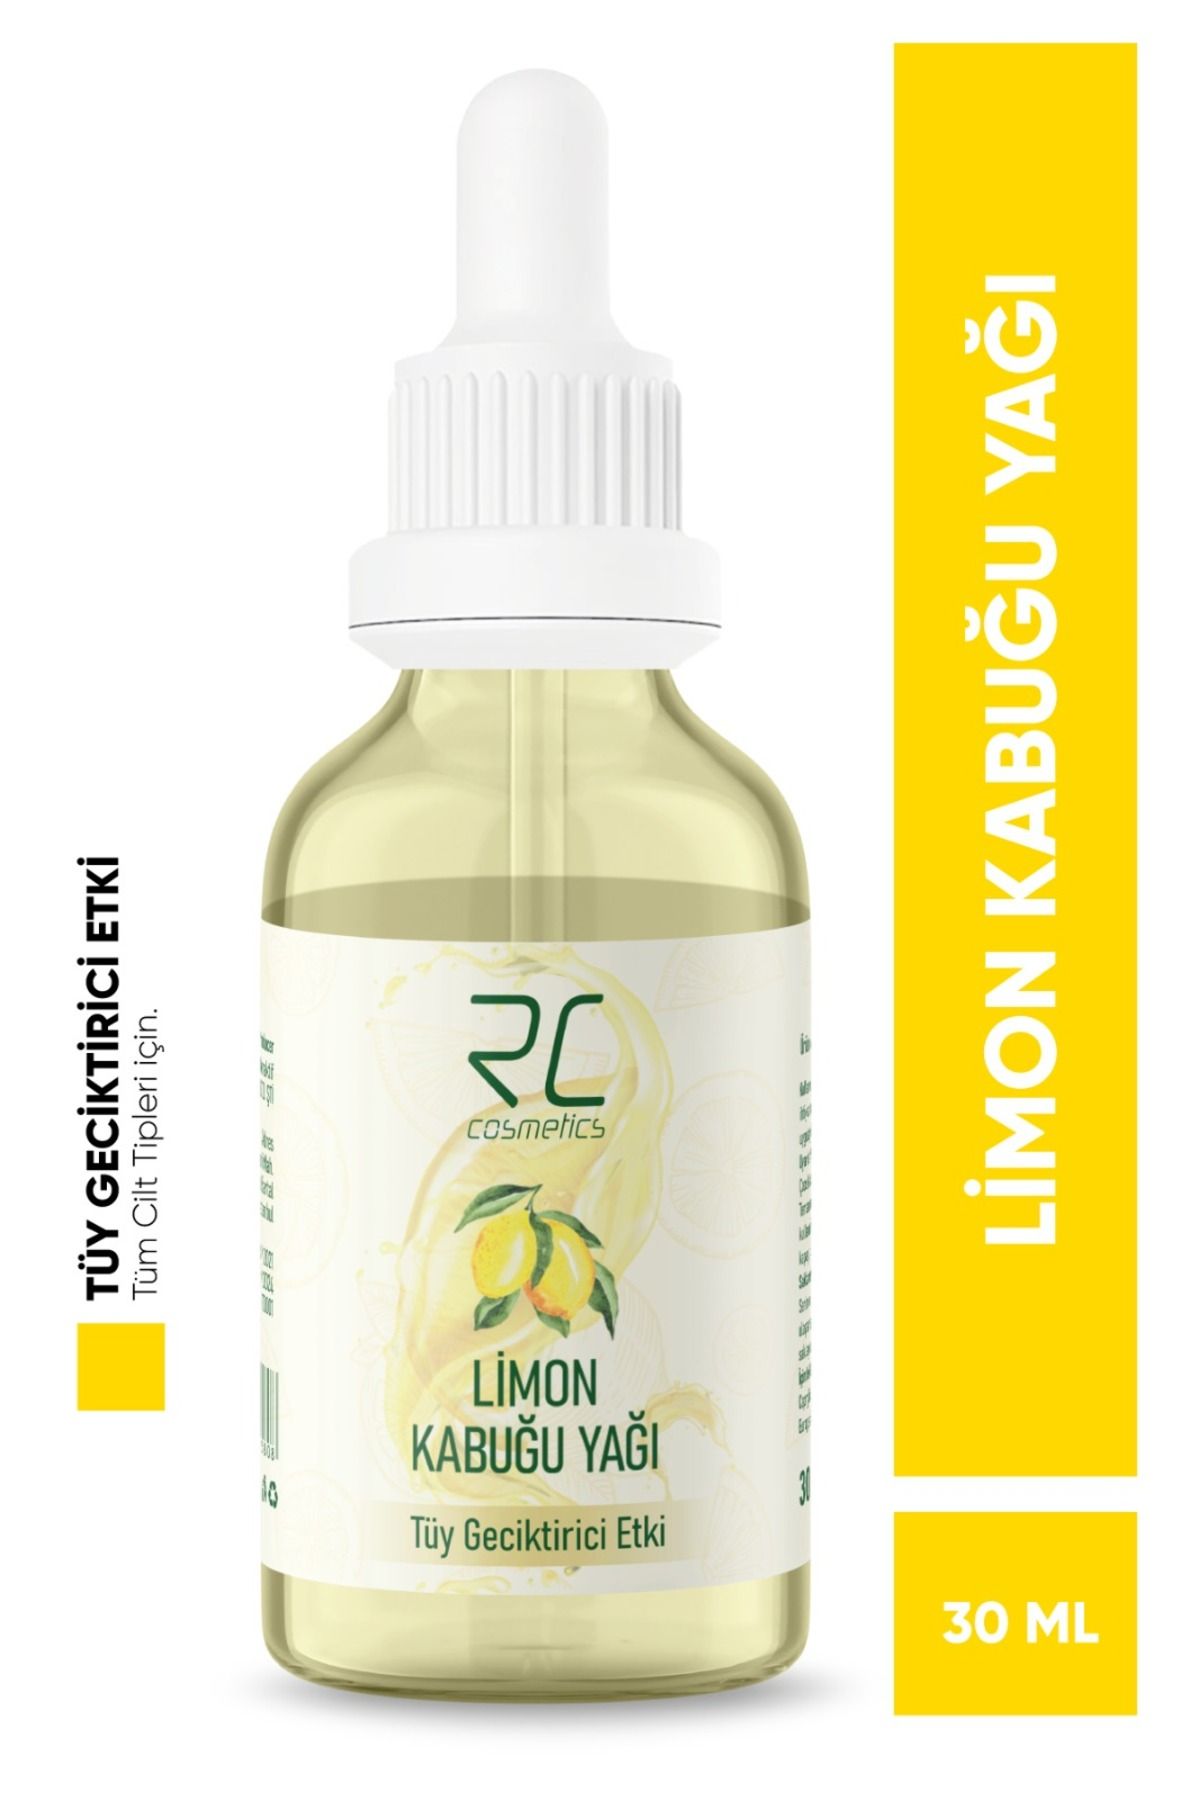 RC COSMETİCS Limon Kabuğu Yağı Tüy Geciktiricili Etki Tüy Azaltıcı Serum 30ml